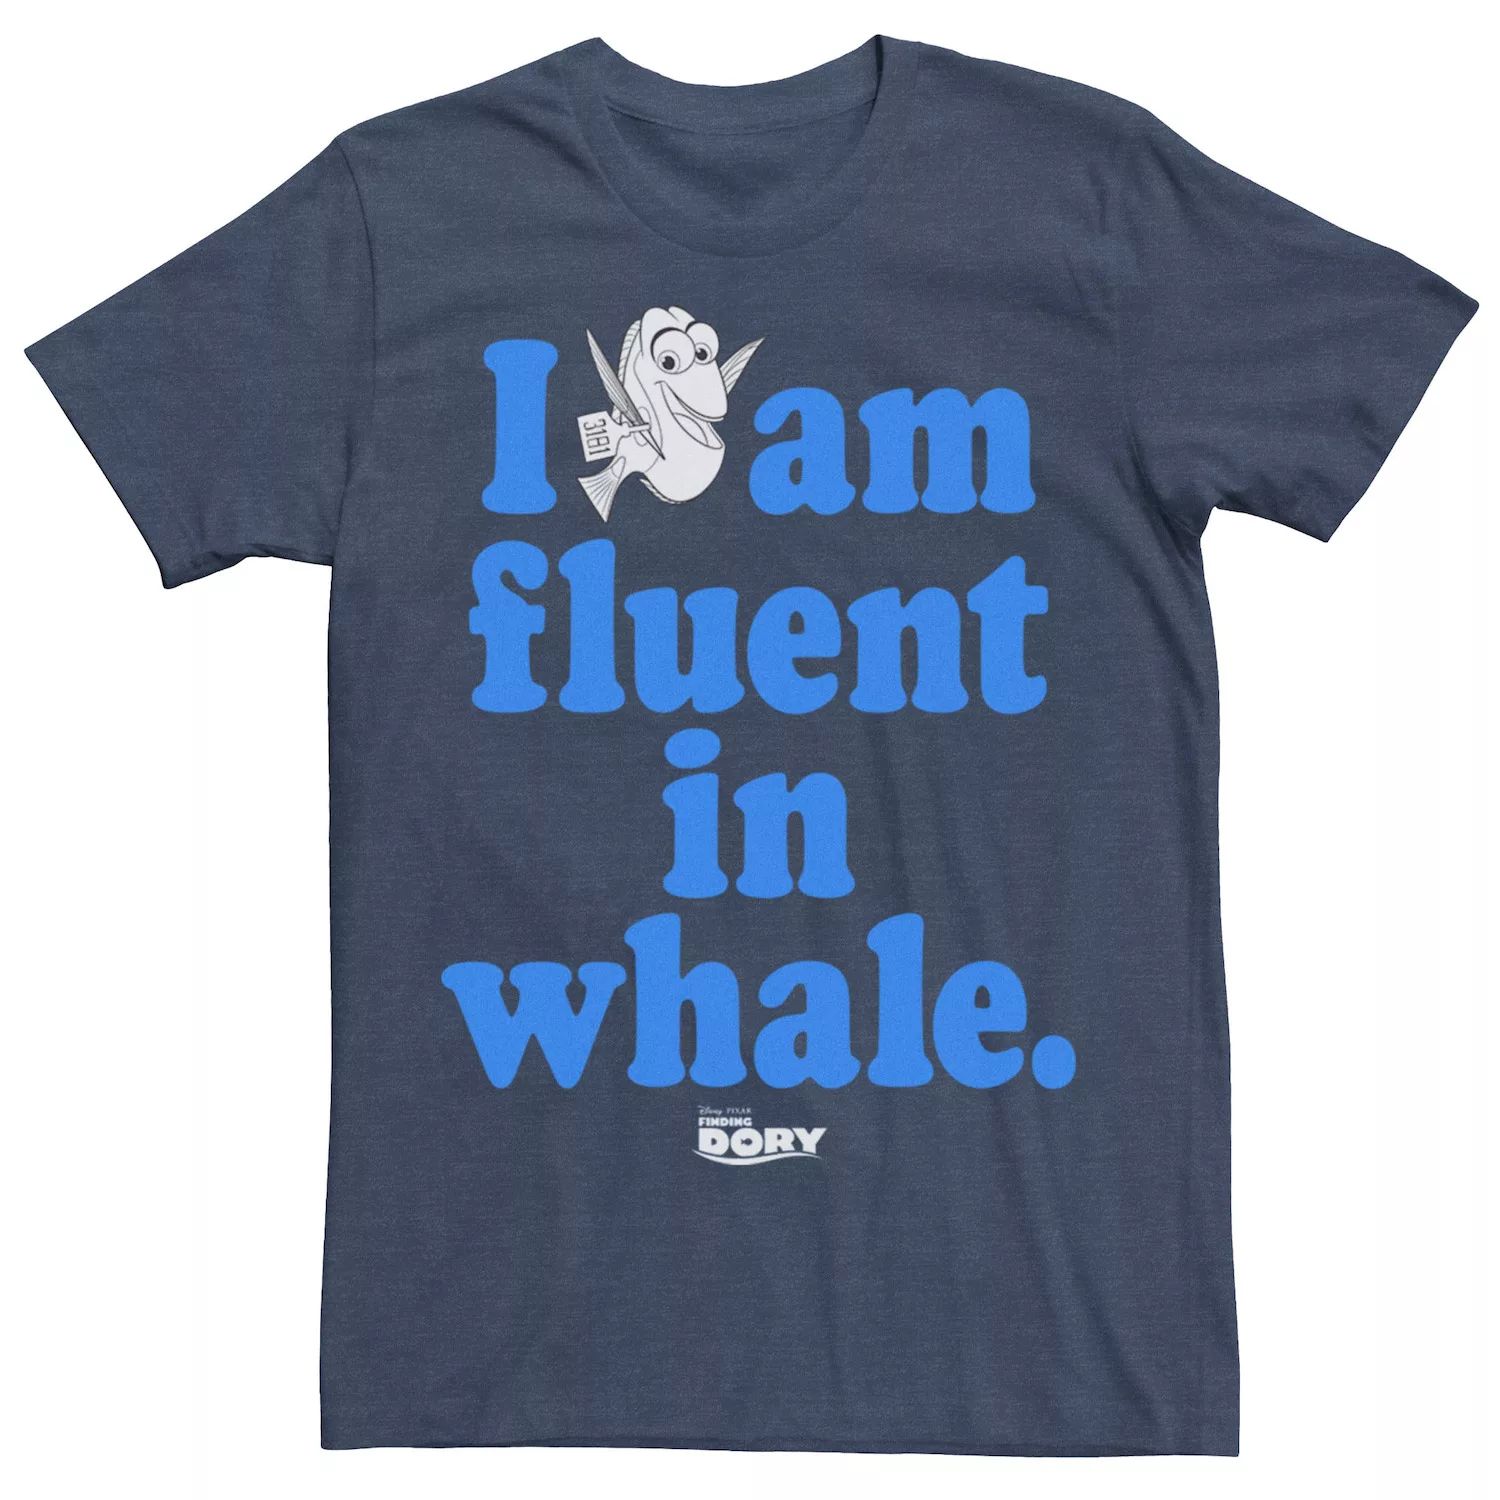 Мужская футболка Finding Dory I Am Fluent в китовой футболке Disney / Pixar мужская футболка finding dory hank ok с crazy tee disney pixar